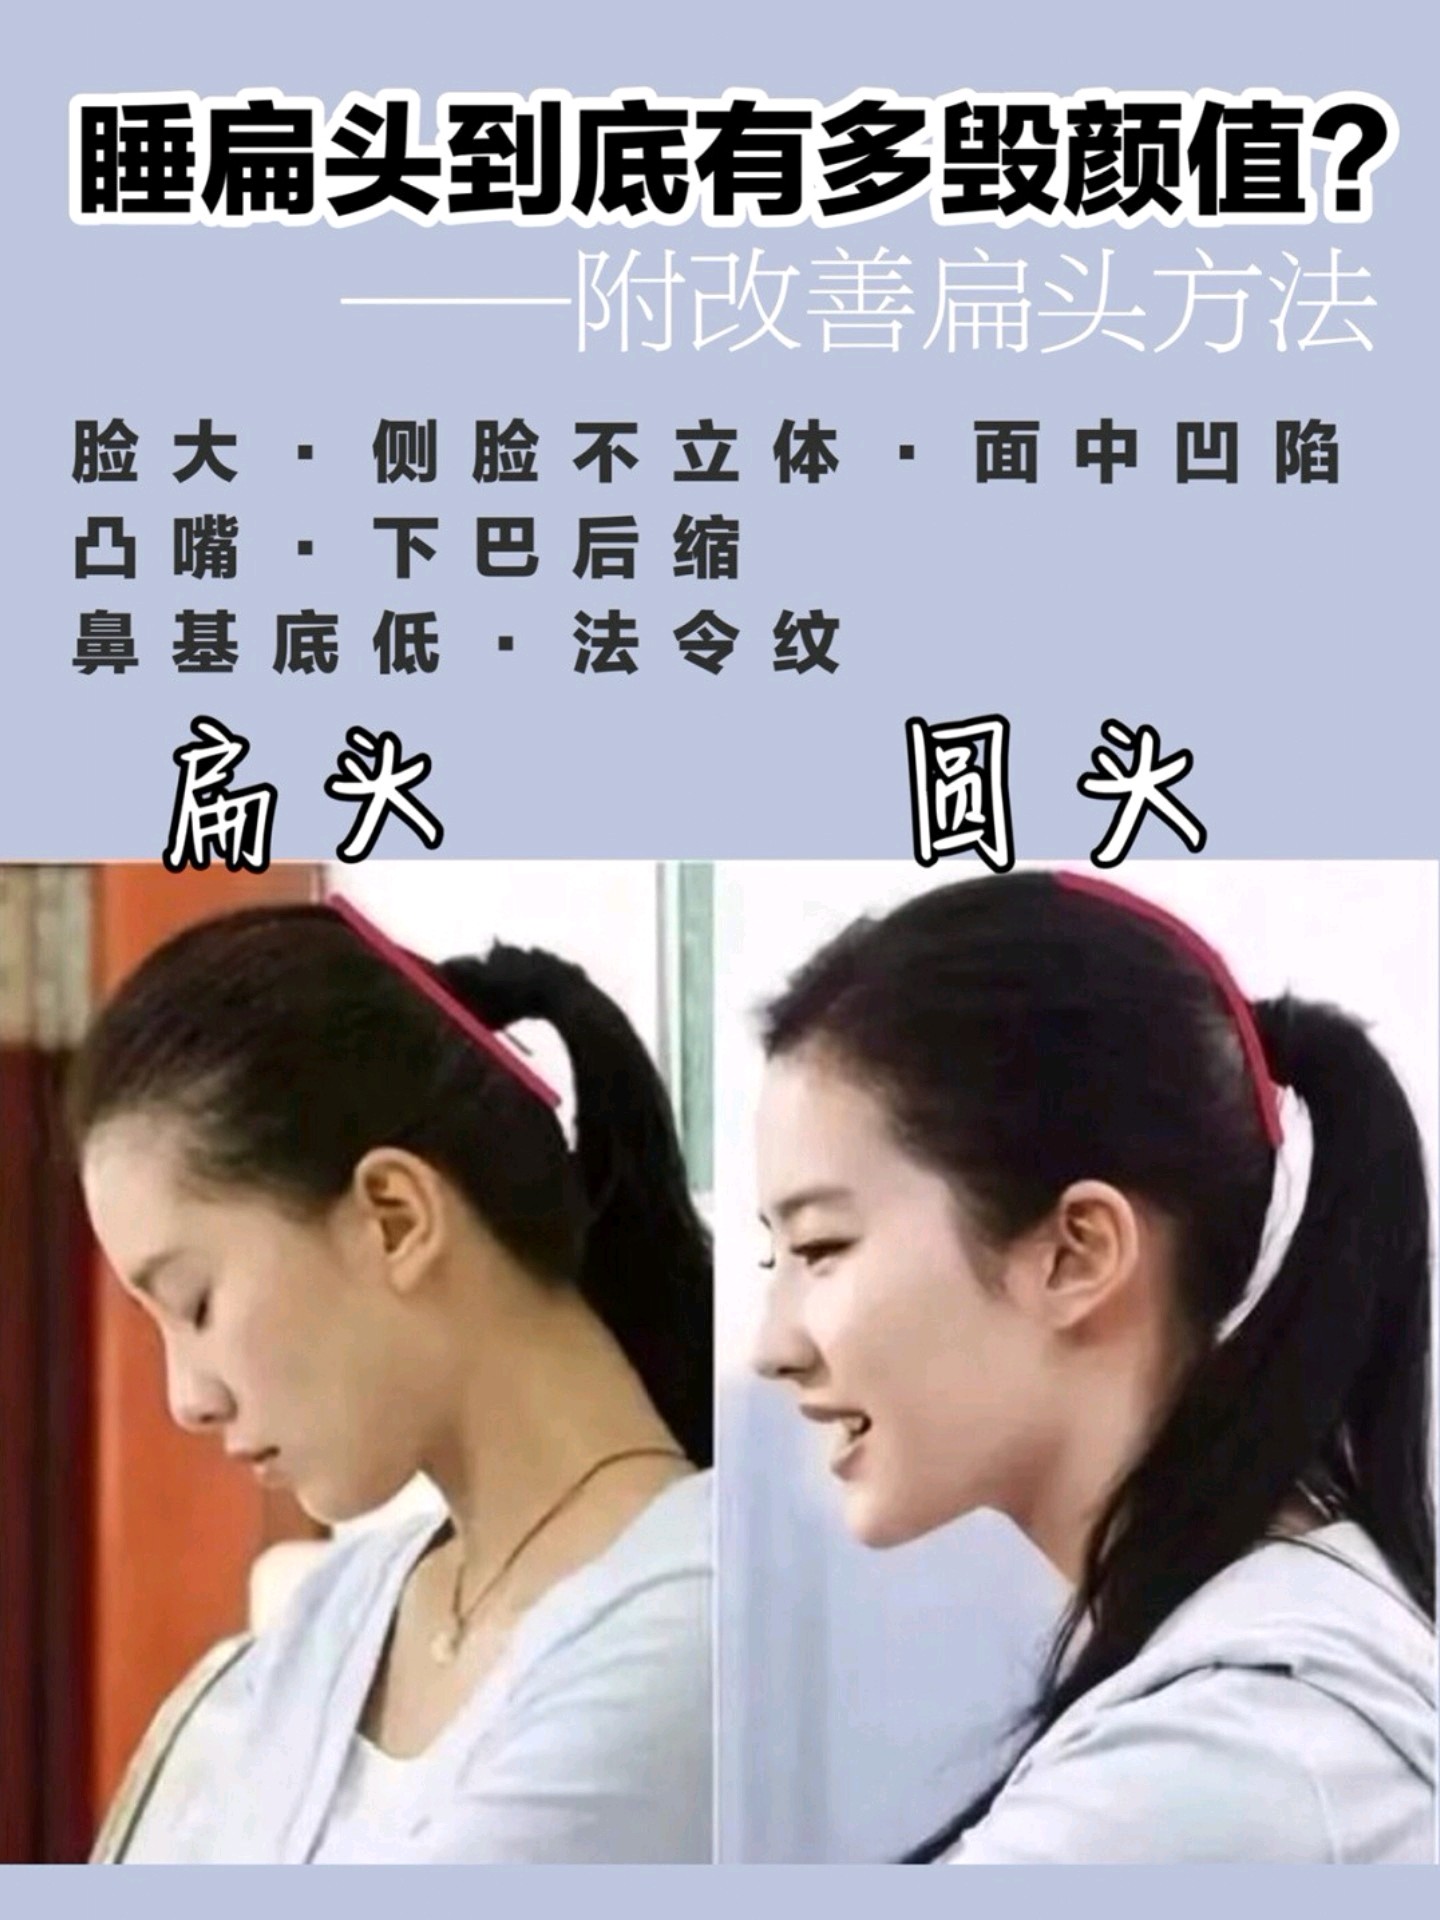 两个典型侧脸对比 刘诗诗(扁头): 后脑勺扁平,脸深度很浅,五官不撂邋